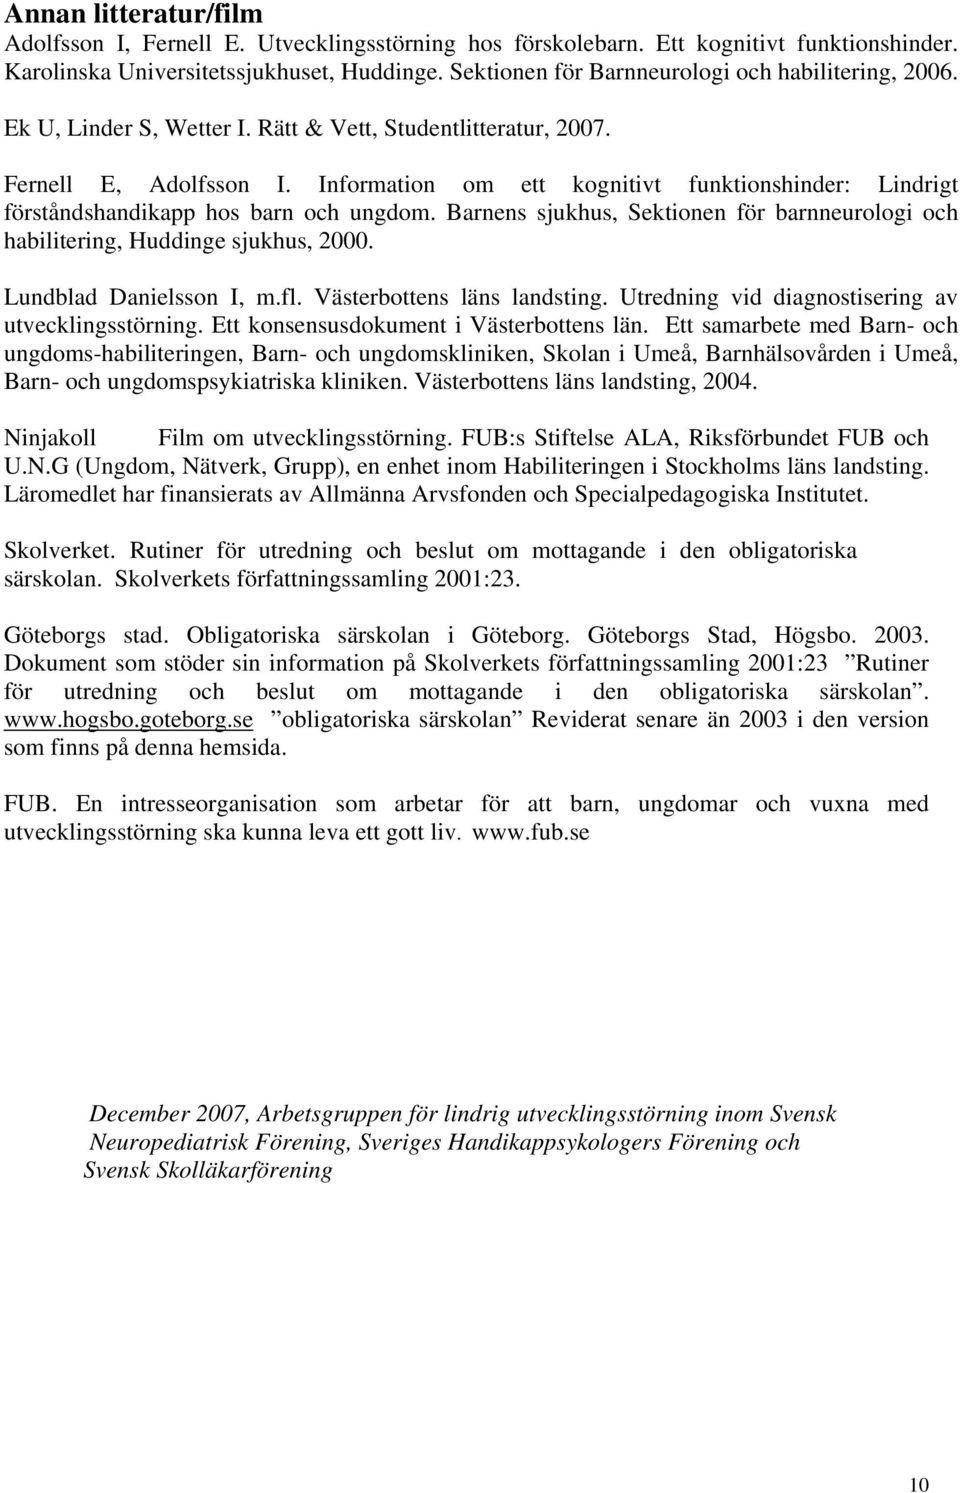 Information om ett kognitivt funktionshinder: Lindrigt förståndshandikapp hos barn och ungdom. Barnens sjukhus, Sektionen för barnneurologi och habilitering, Huddinge sjukhus, 2000.